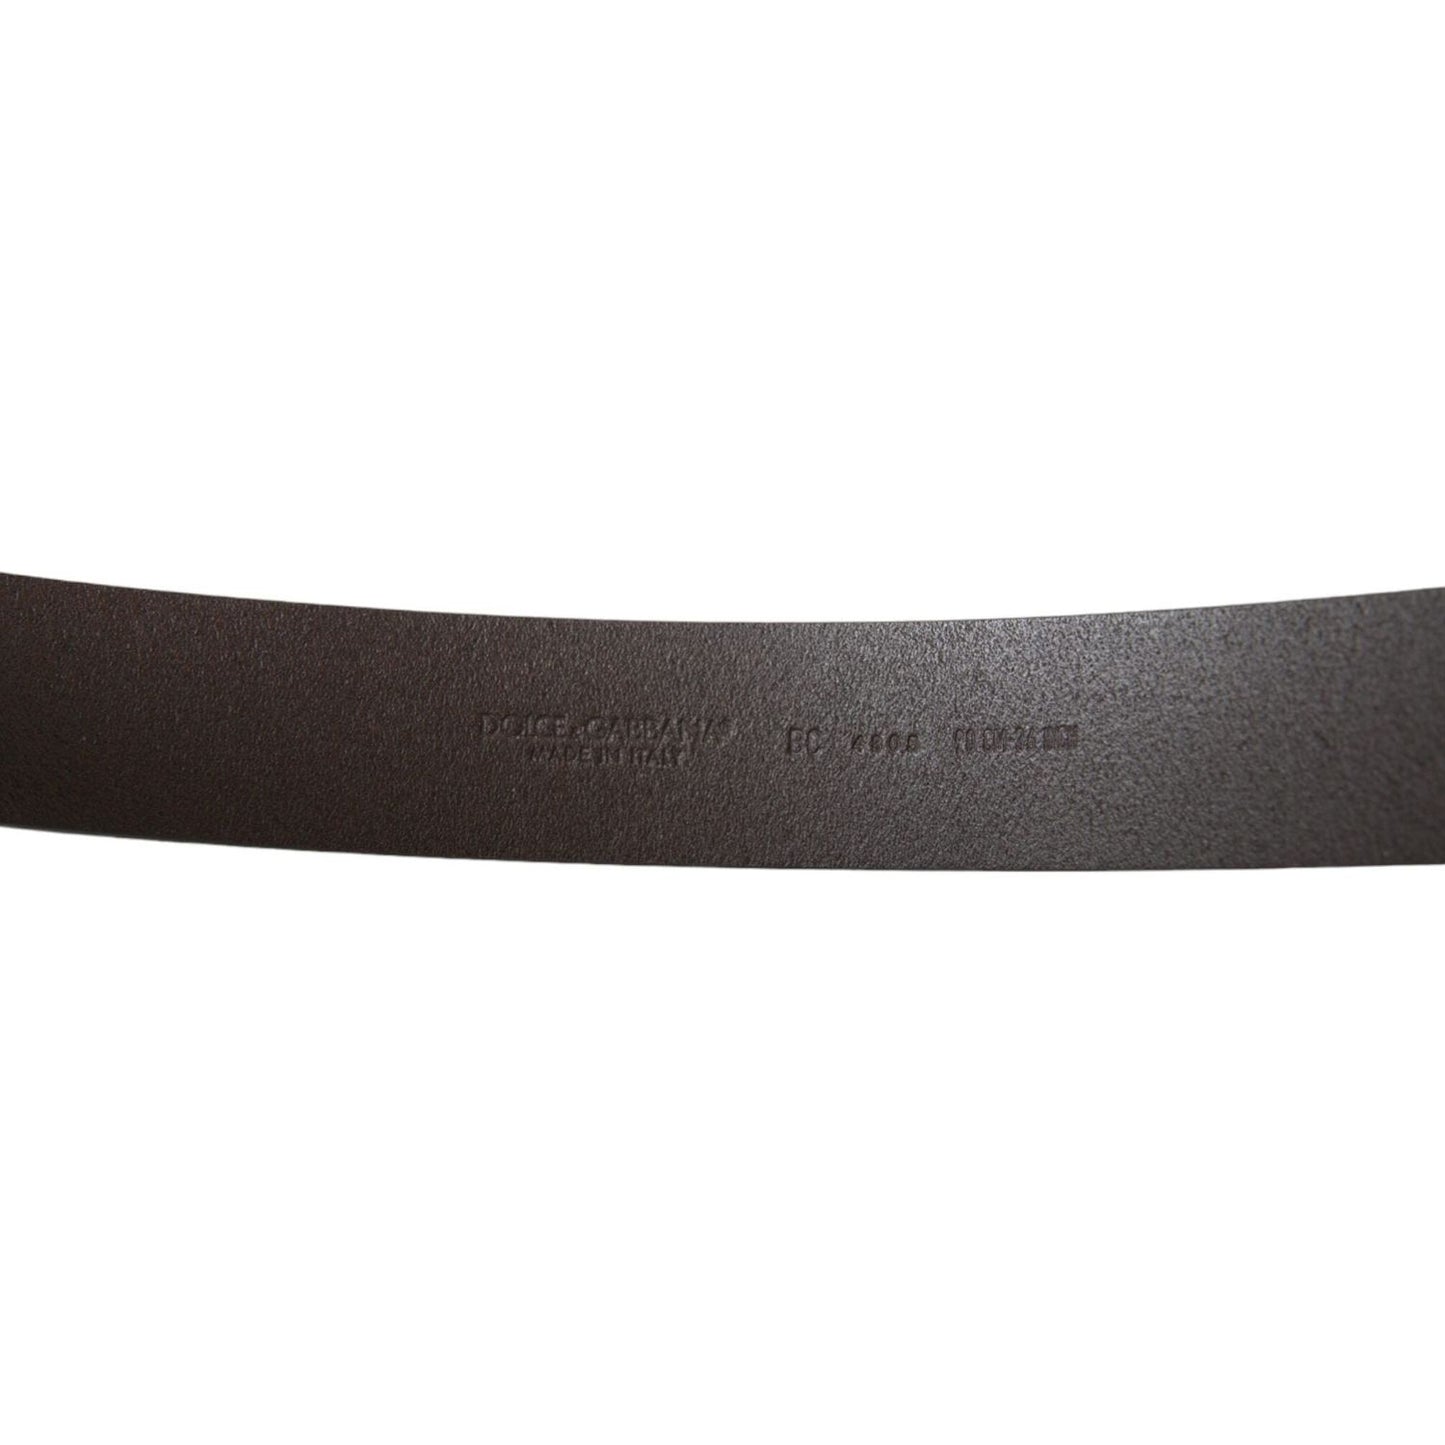 Dolce & Gabbana Elegant Dark Brown Leather Belt elegant-dark-brown-leather-belt